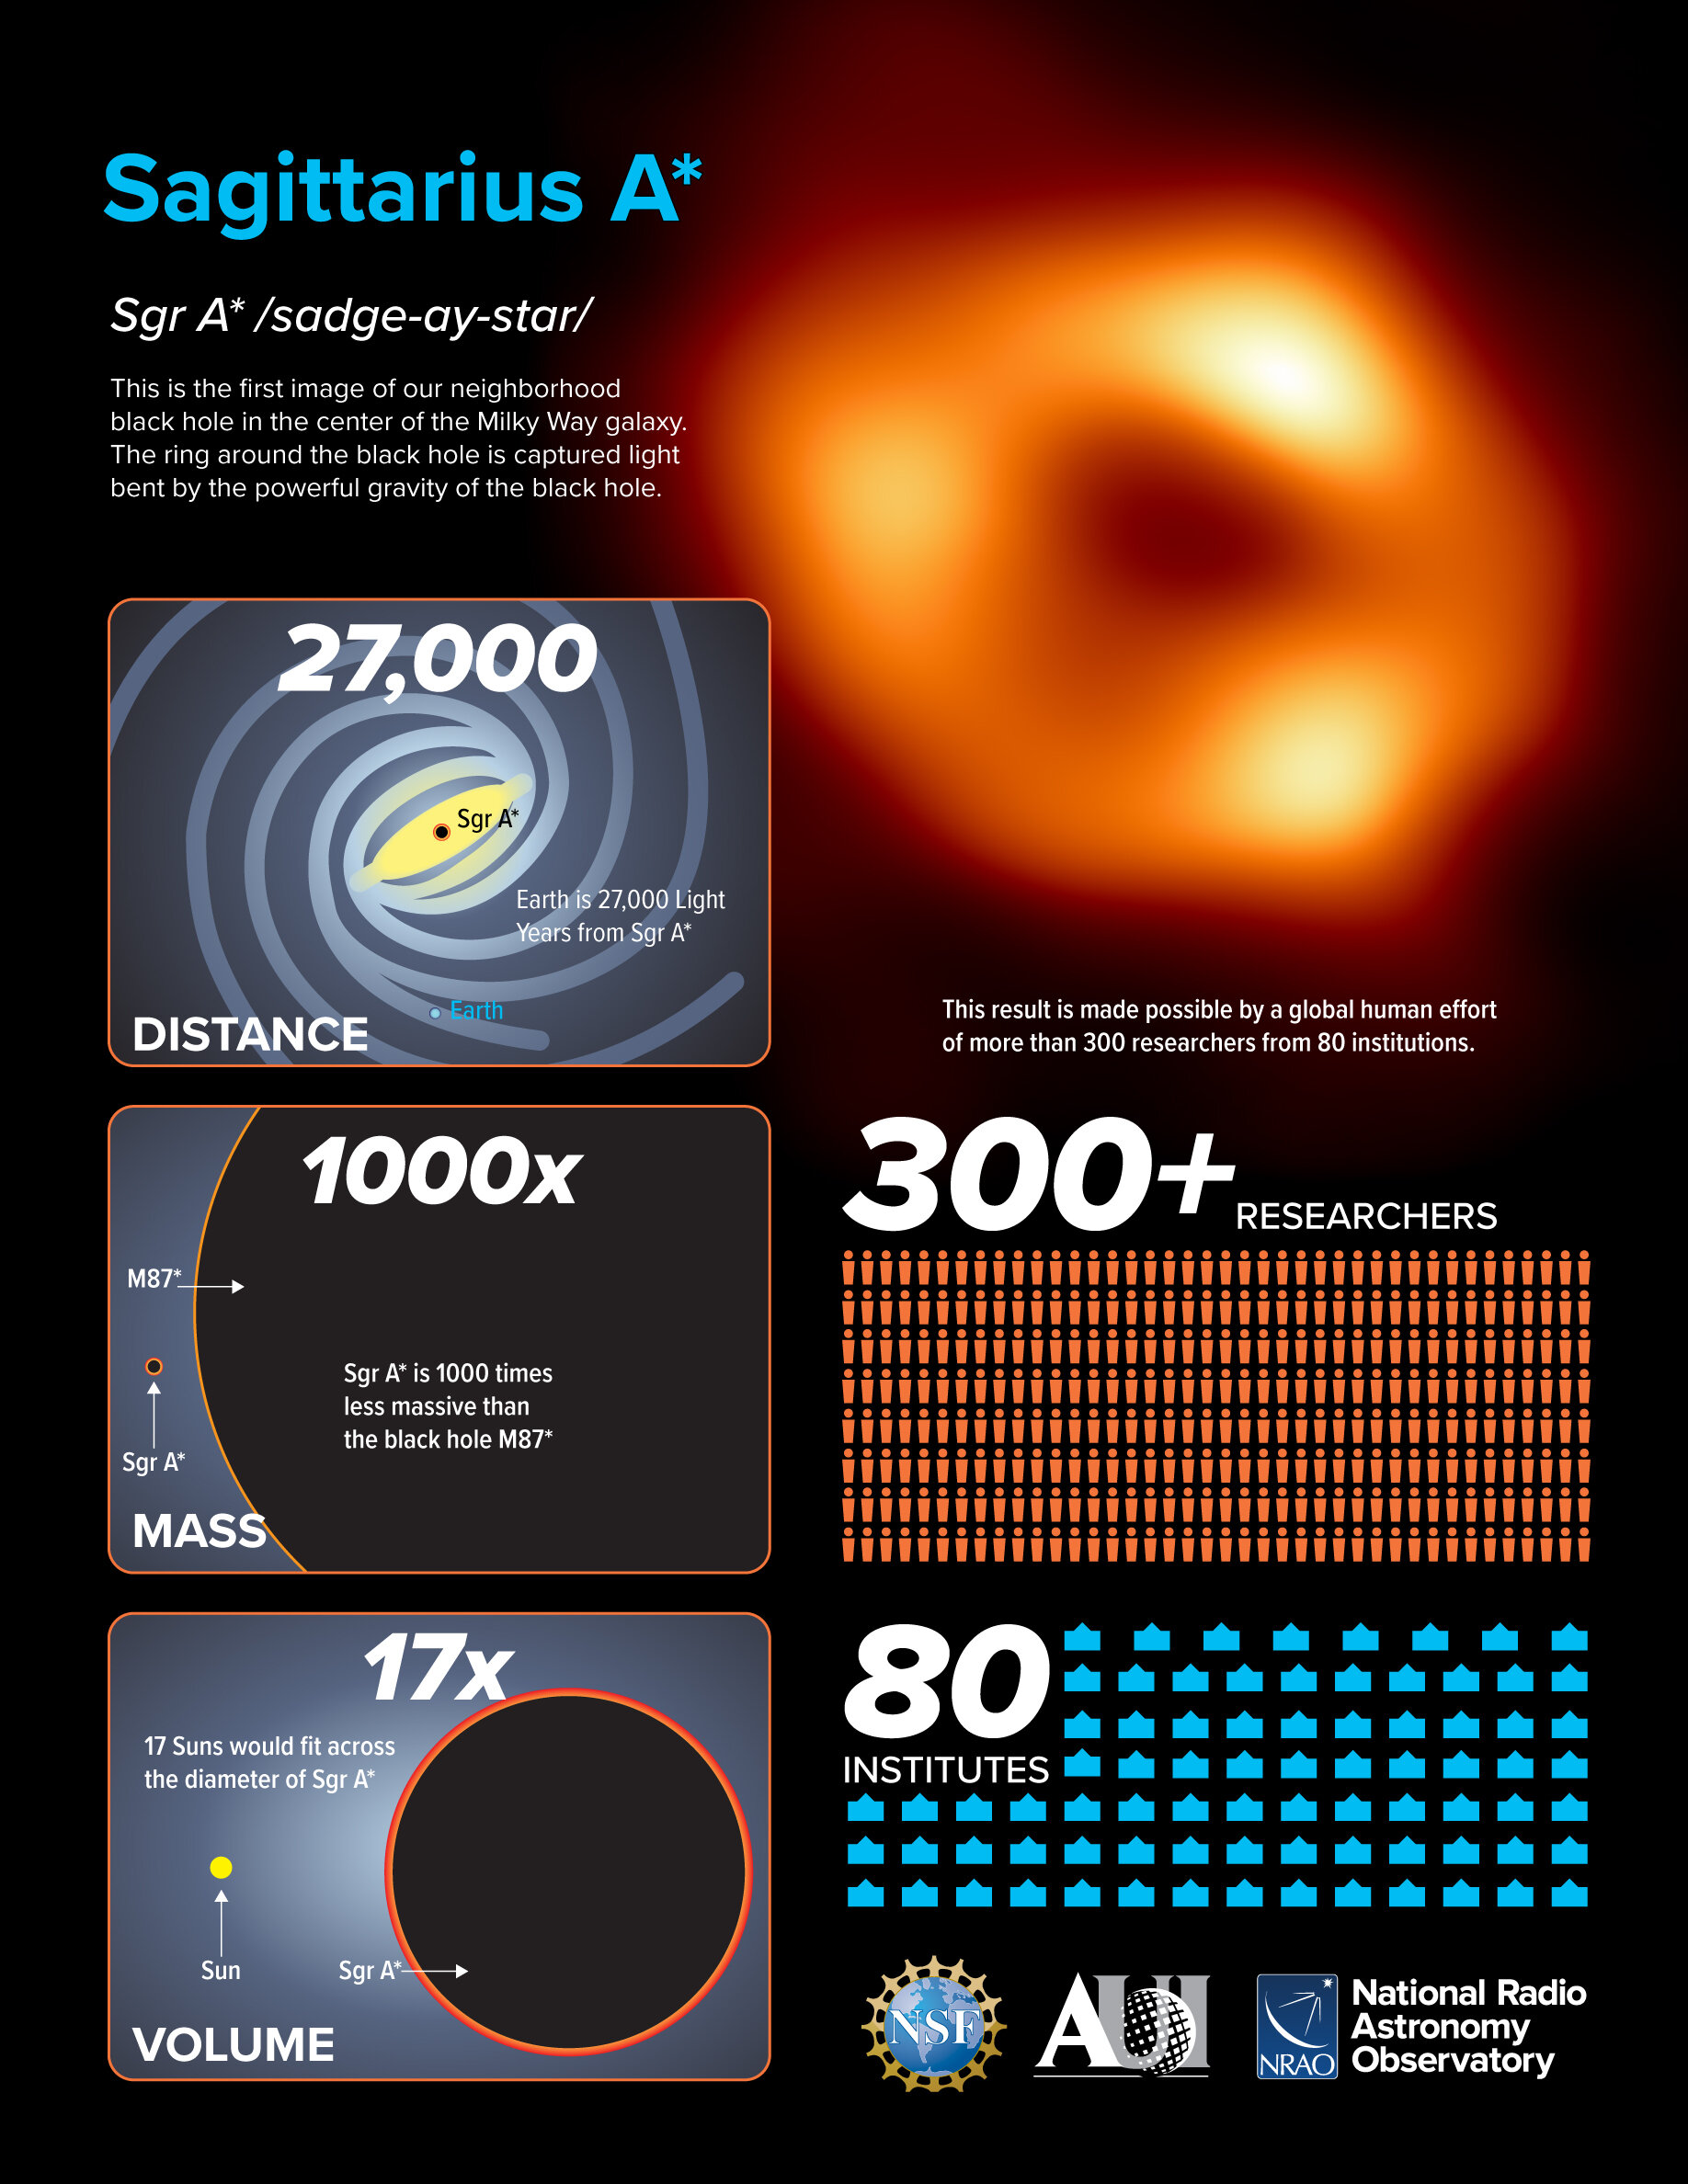 Sgr A* представляет собой сложный радиоисточник в центре Галактики Млечный Путь, в котором находится сверхмассивная черная дыра